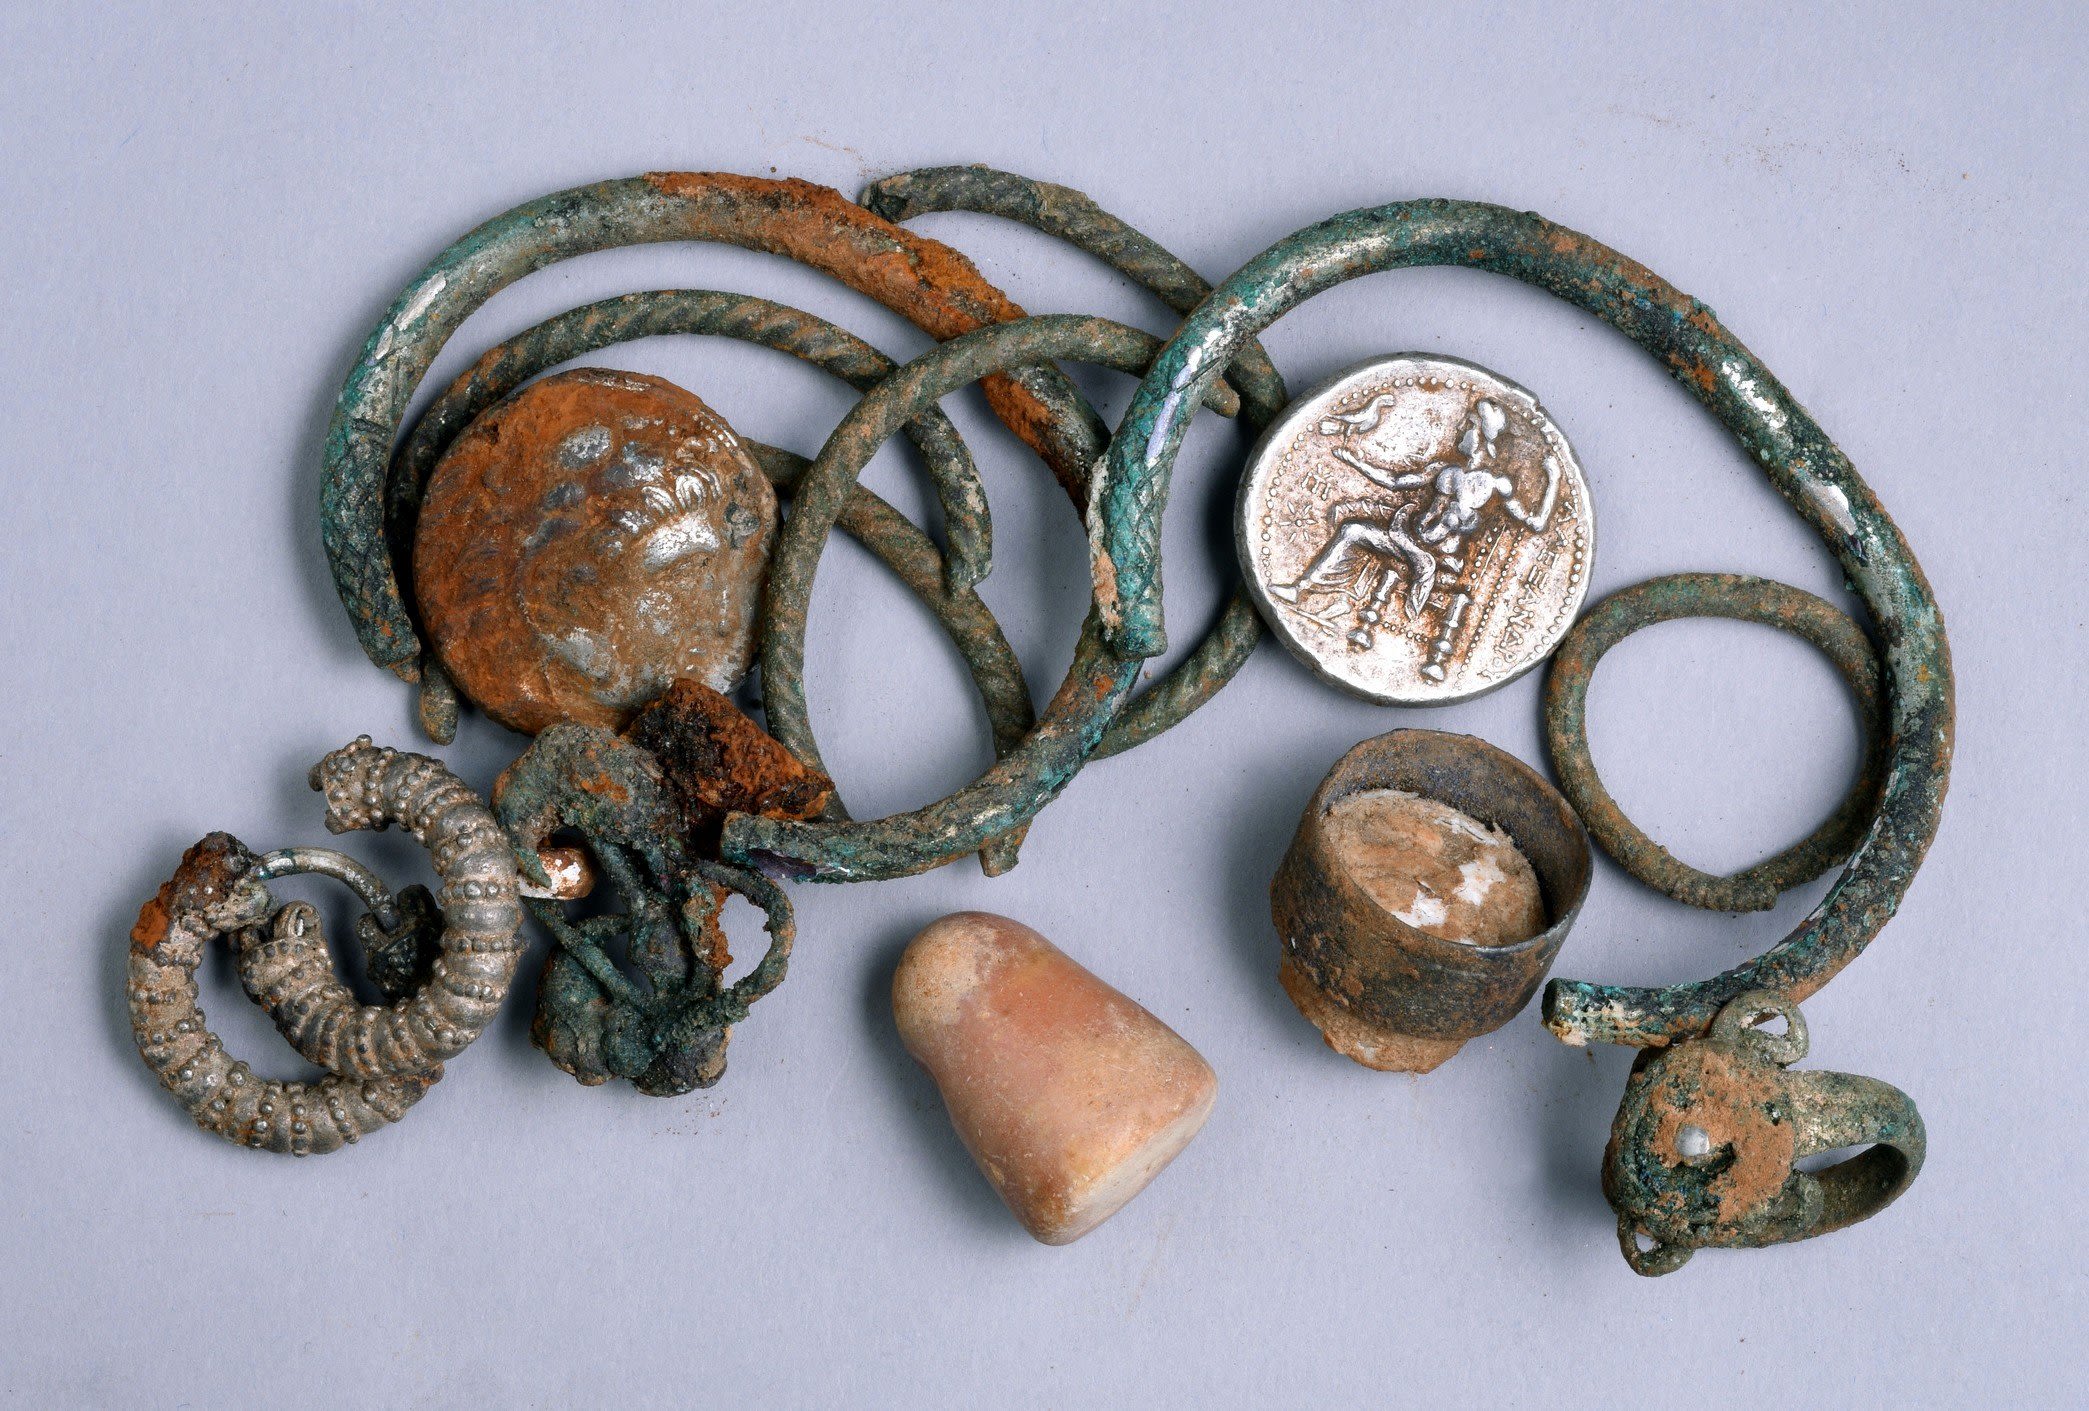 Israeli cavers find 2,300-year-old treasure stash | CNN